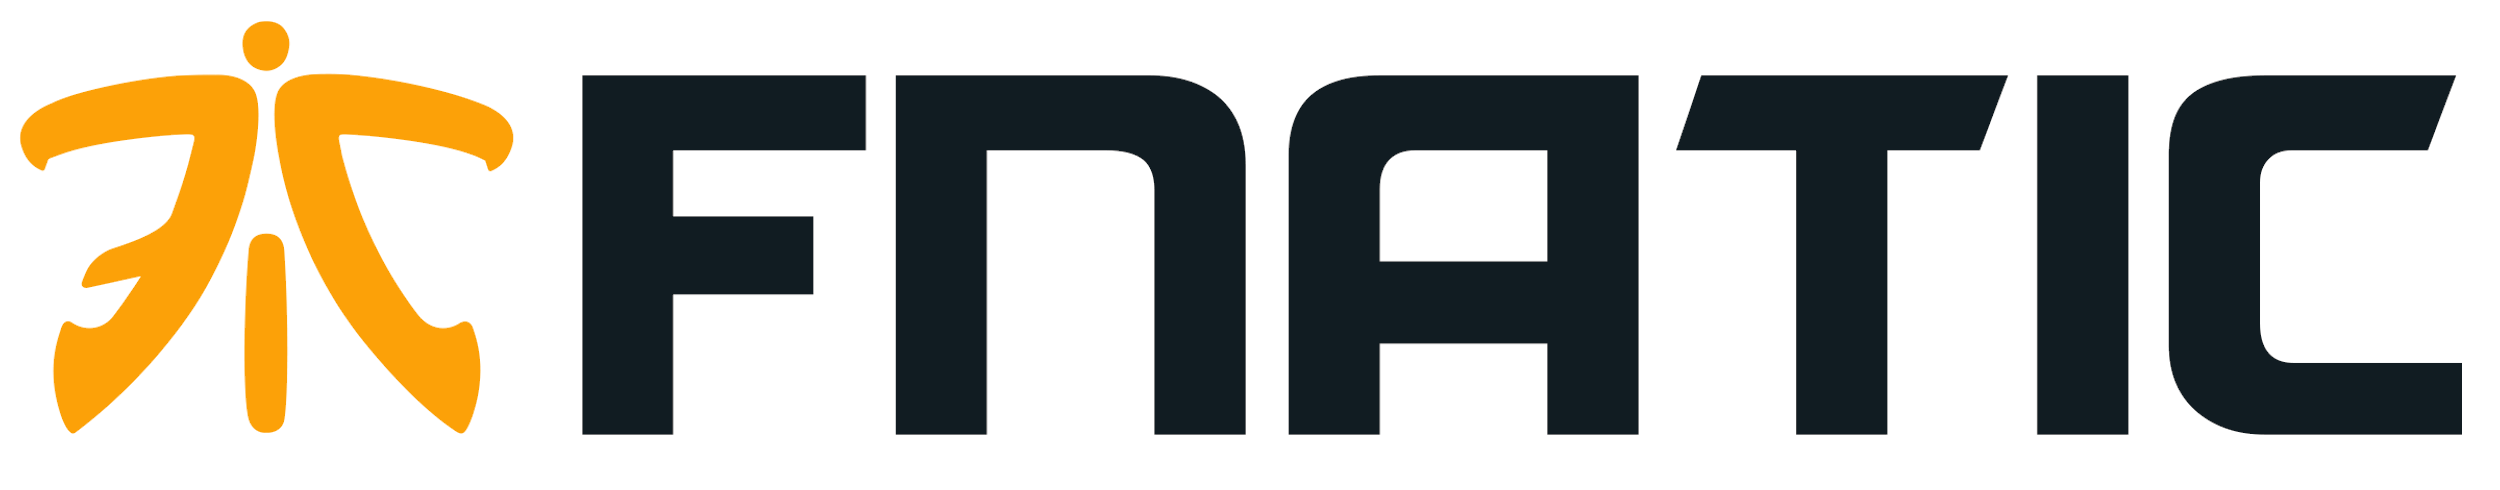 Fnatic Logo - Fnatic – Logos Download